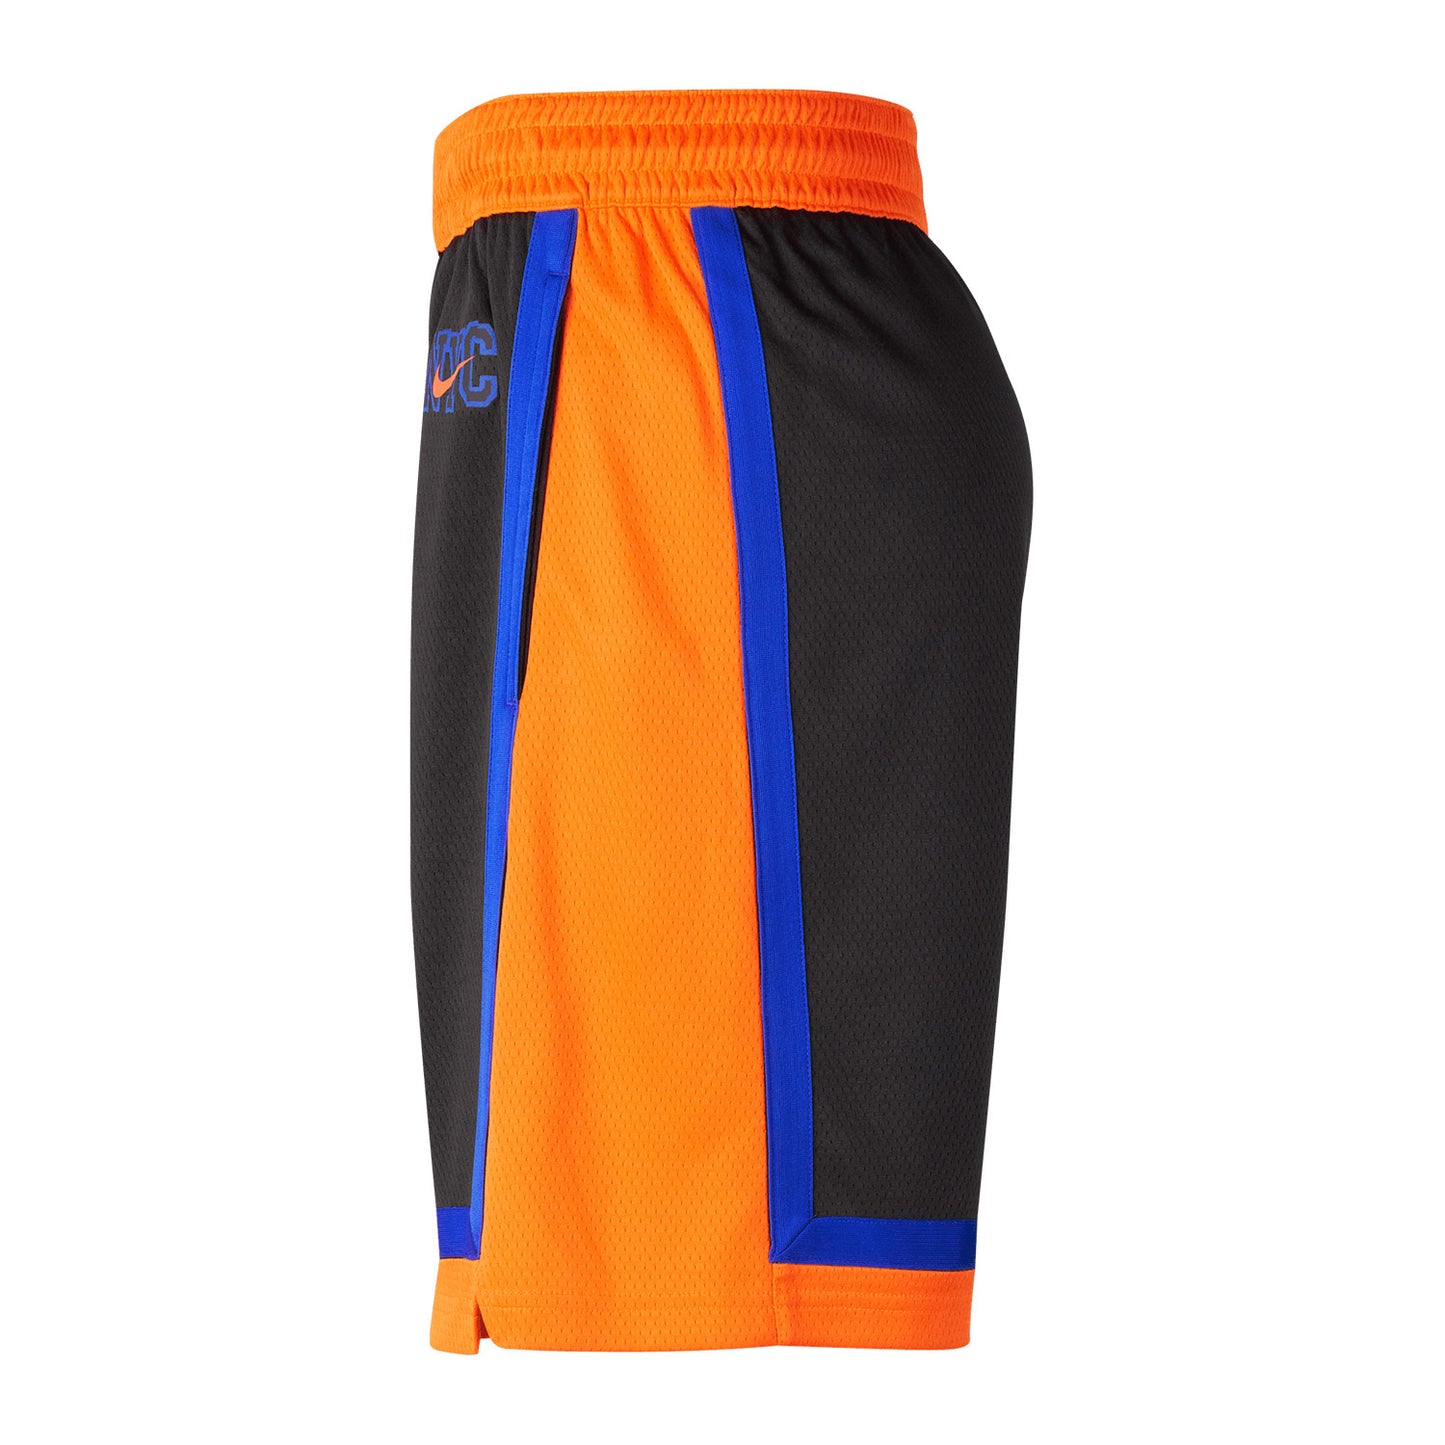 Nike Knicks City Edition 22-23 Dri-fit Swingman Shorts In Black, Orange & Blue - Left Side View